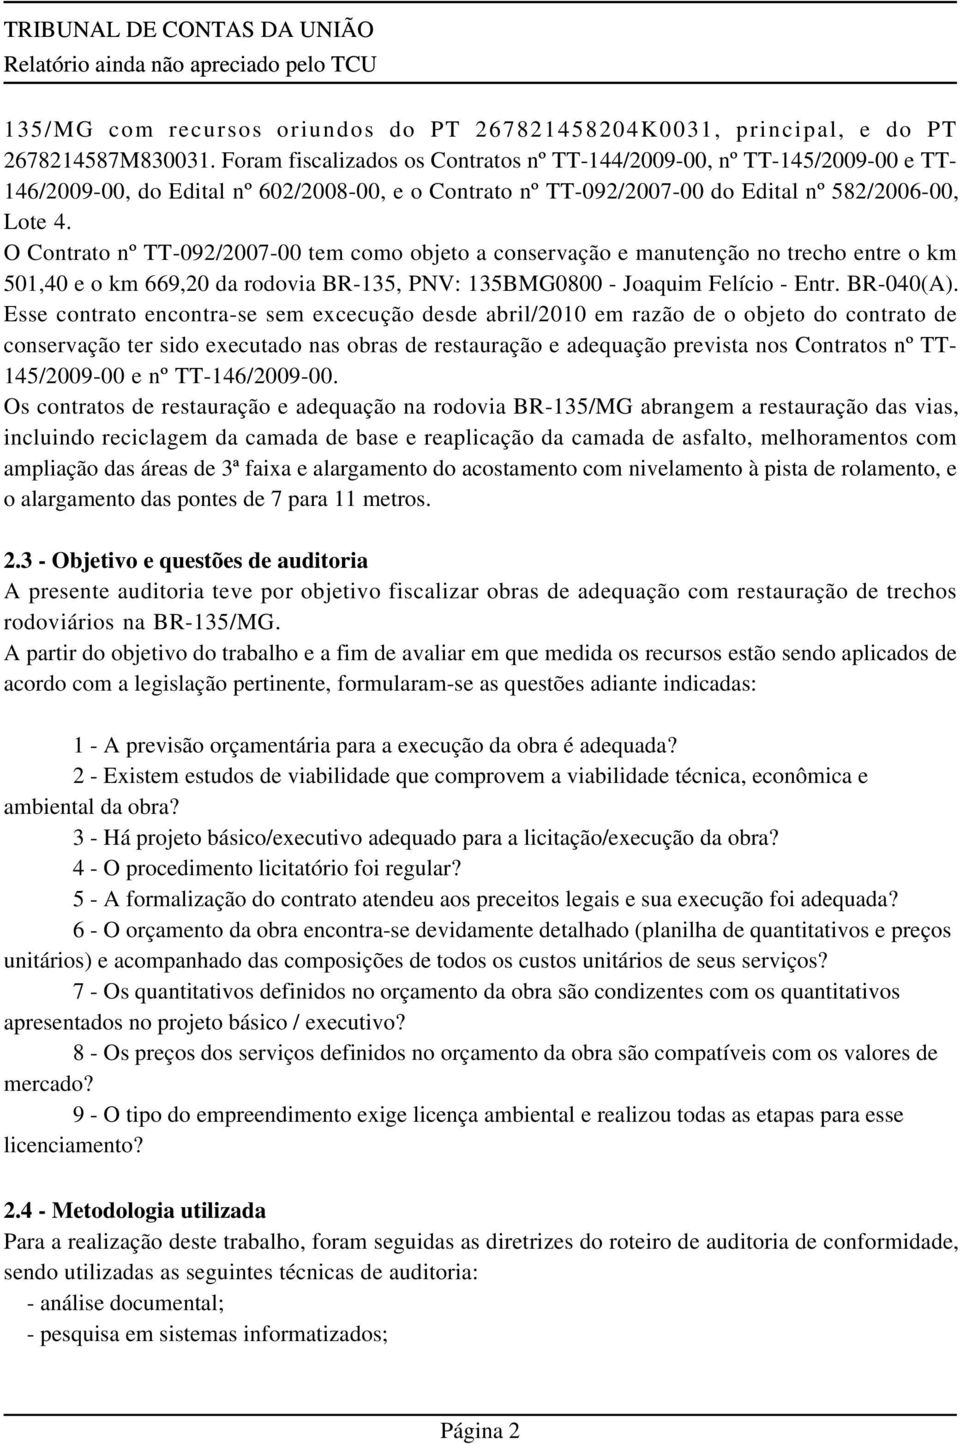 O Contrato nº TT-092/2007-00 tem como objeto a conservação e manutenção no trecho entre o km 501,40 e o km 669,20 da rodovia BR-135, PNV: 135BMG0800 - Joaquim Felício - Entr. BR-040(A).